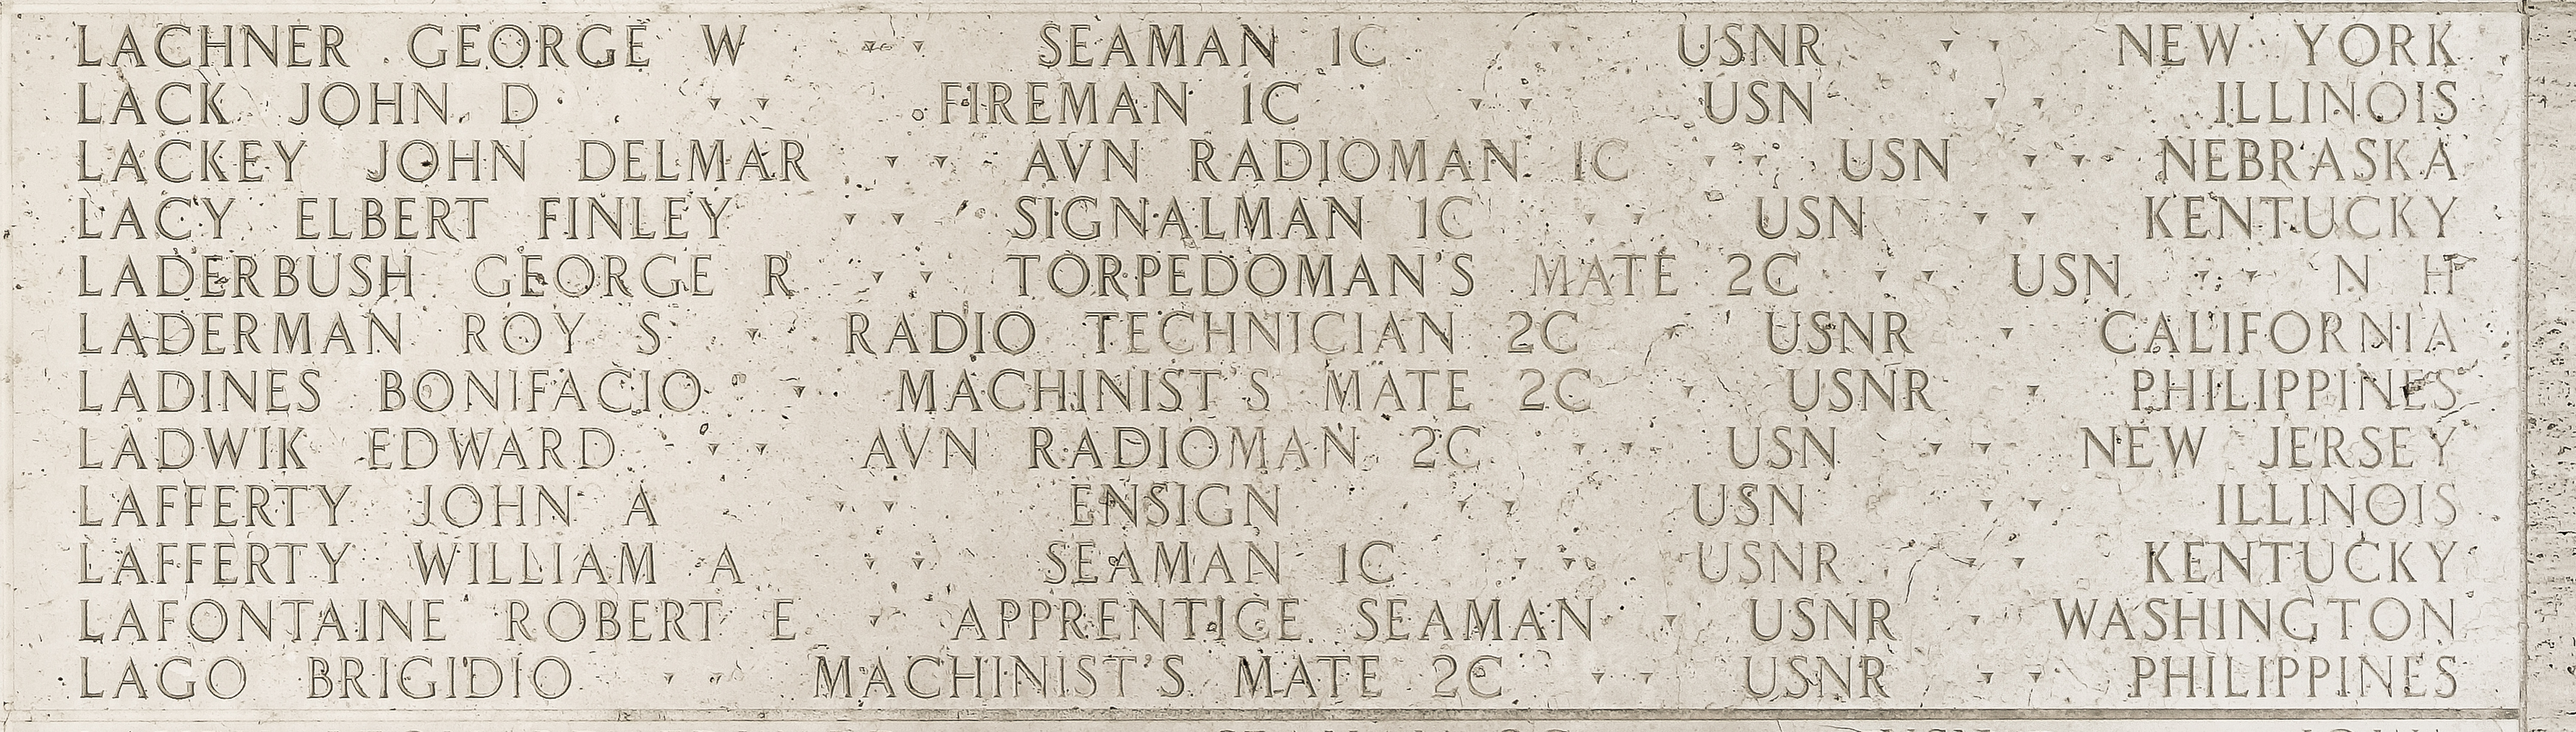 Robert E. Lafontaine, Apprentice Seaman